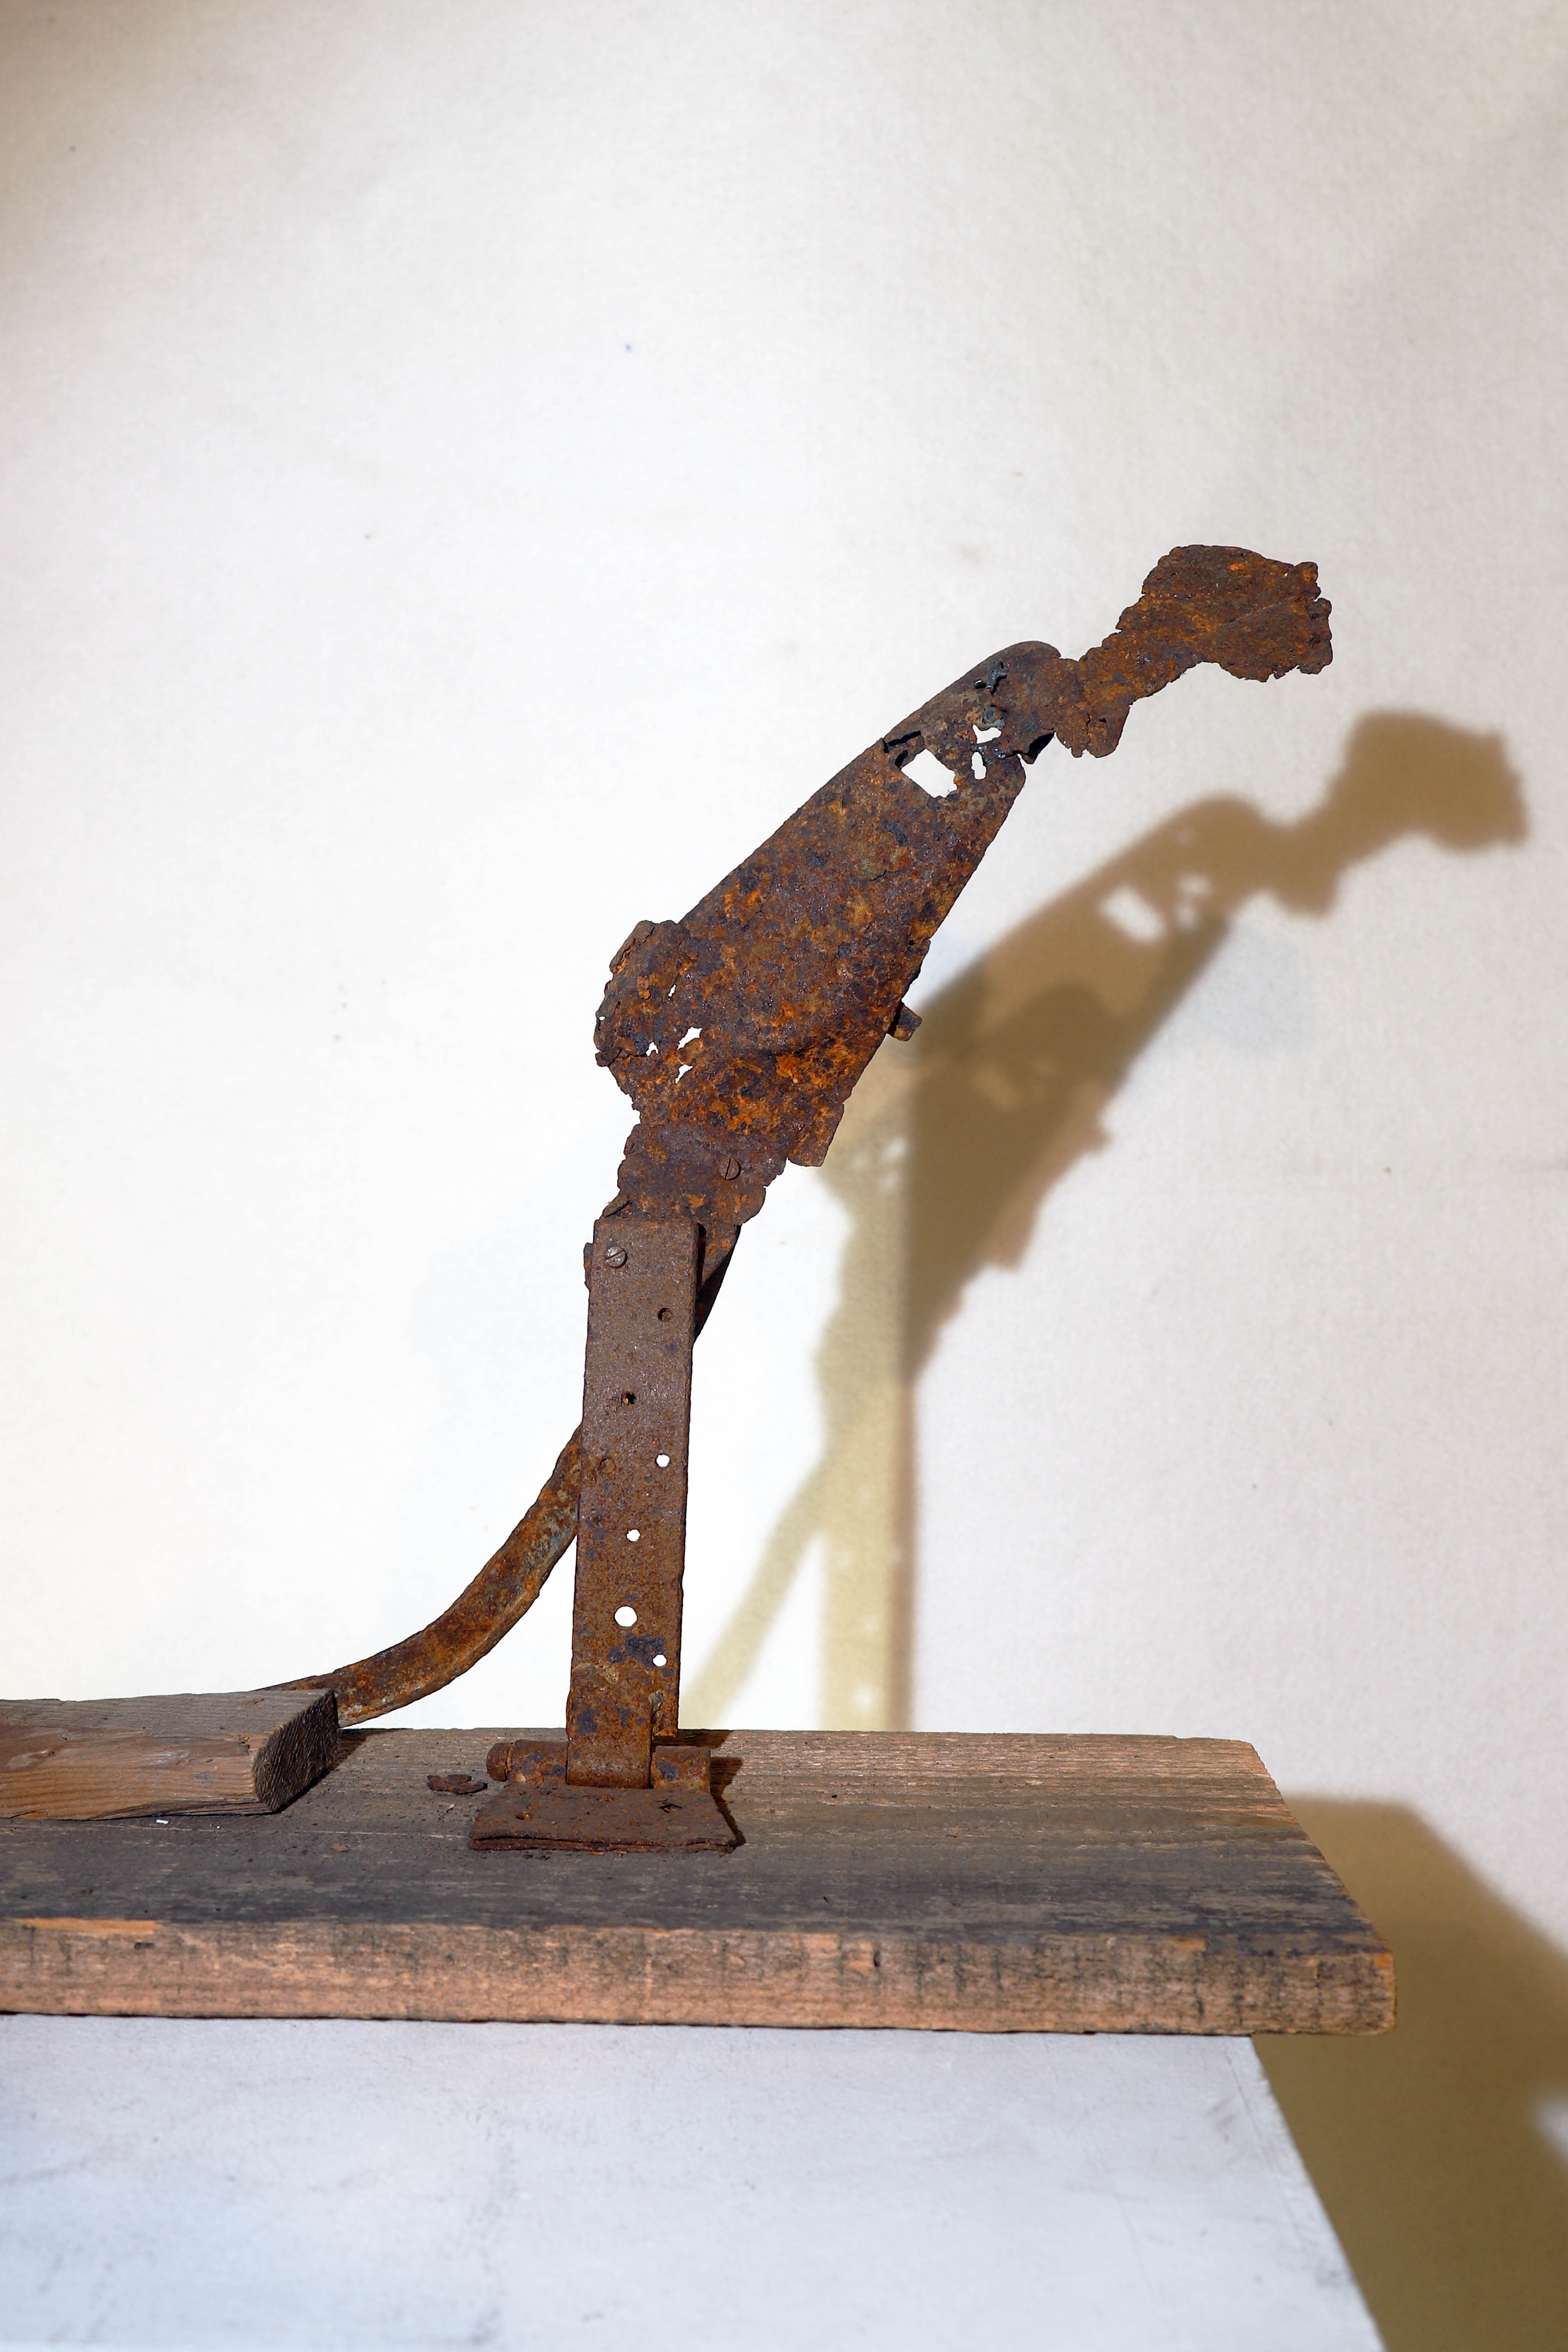 Antonio Panzuto - sculture Ruggini - Figura danzante 8 Il Pensatore - Rusty sculpture Dancing figure The Thinker